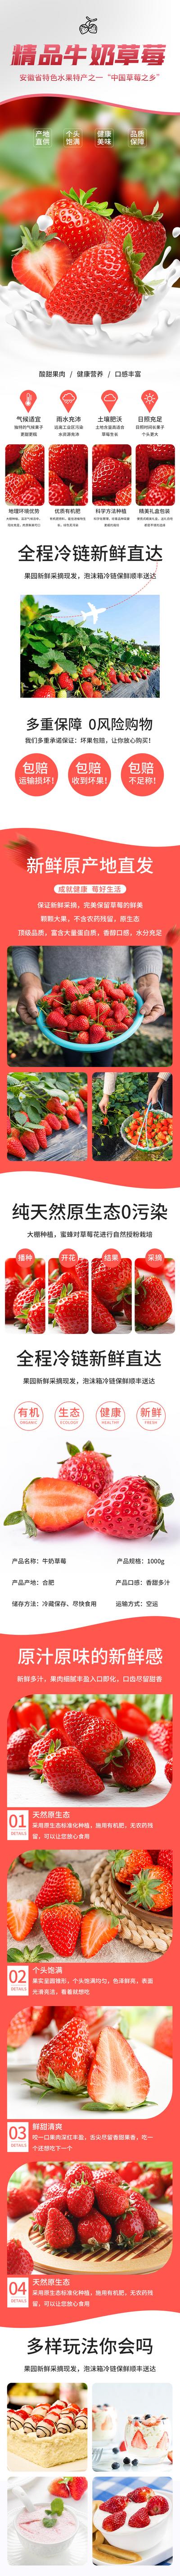 南门网 广告 海报 电商 草莓 详情页 丹东 精品